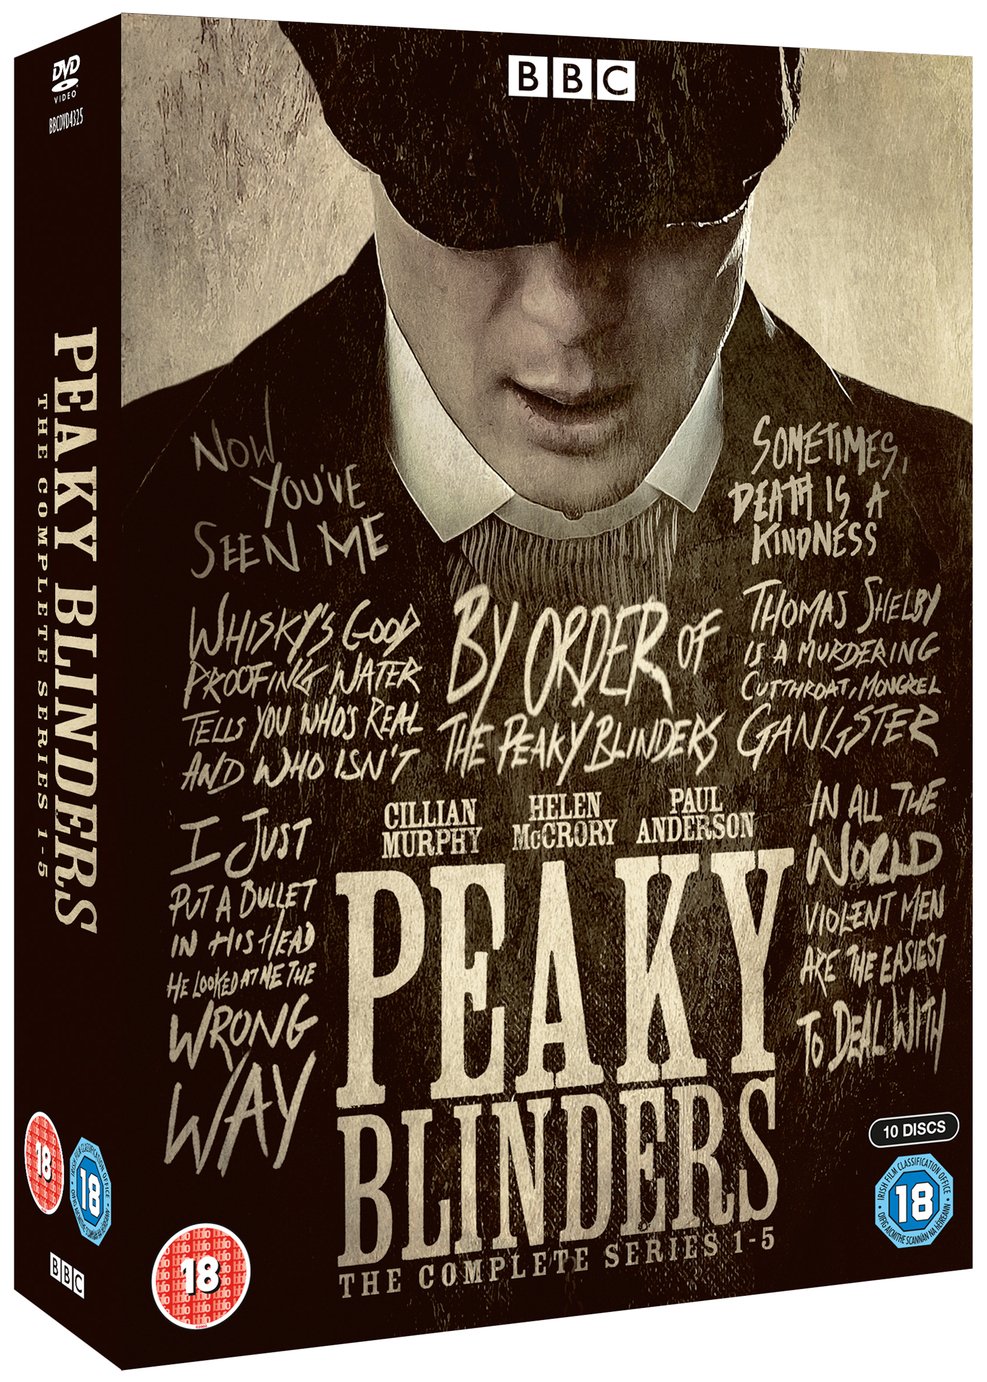 Peaky Blinders Series 1-5 DVD Box Set